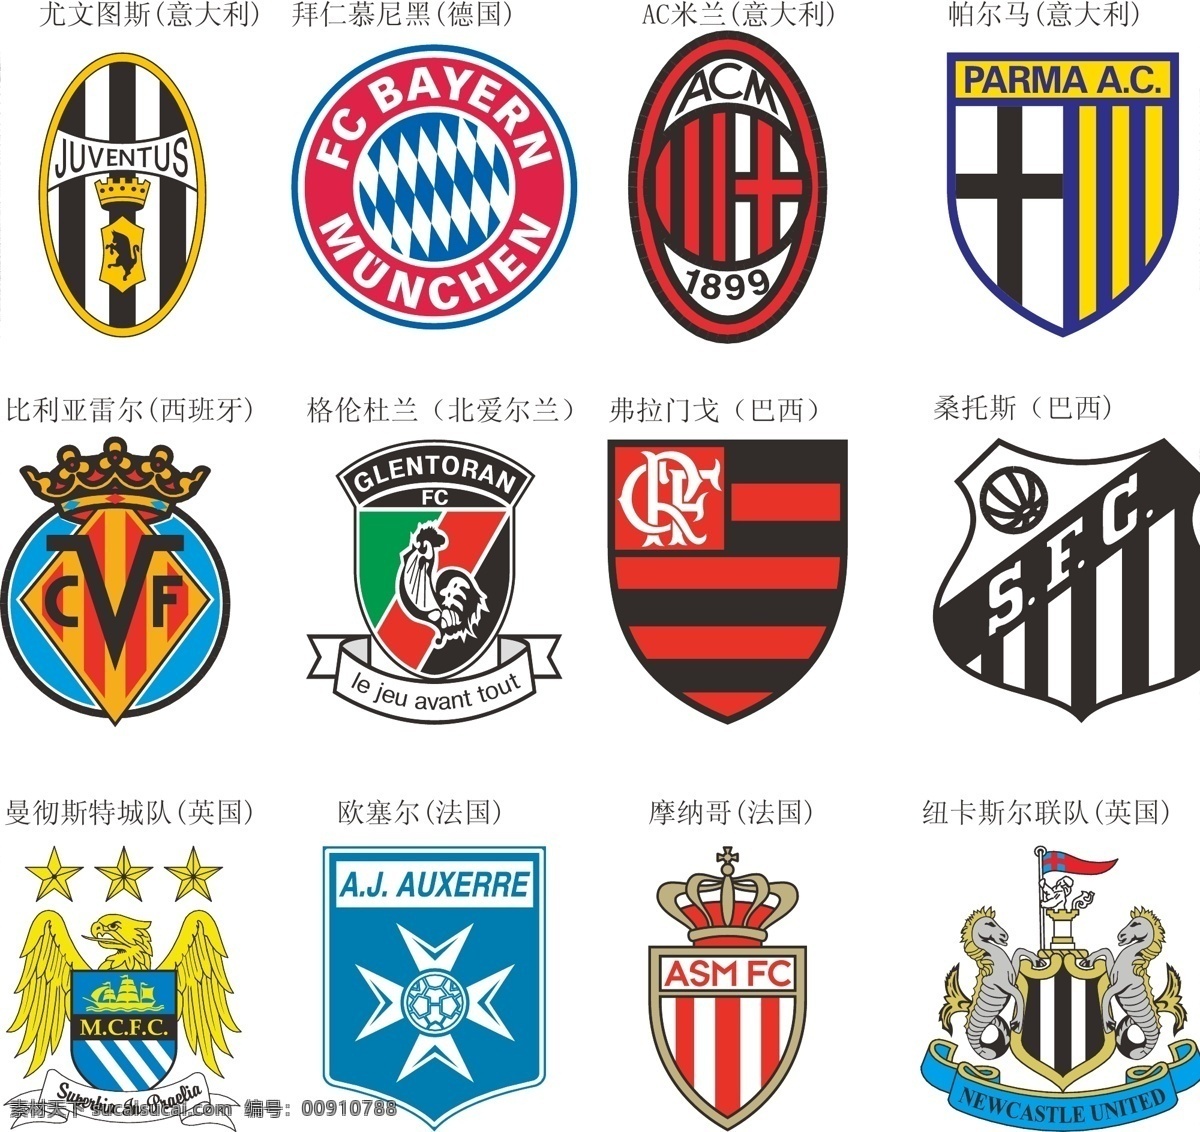 其他矢量 矢量素材 矢量图库 部 份 欧洲 足球队 队 徽 软件版本ai 12矢量素材 12模板下载 切尔西 曼联 阿森纳 ac米兰 巴塞罗那 拜仁慕尼黑 部份足球队标 日常生活